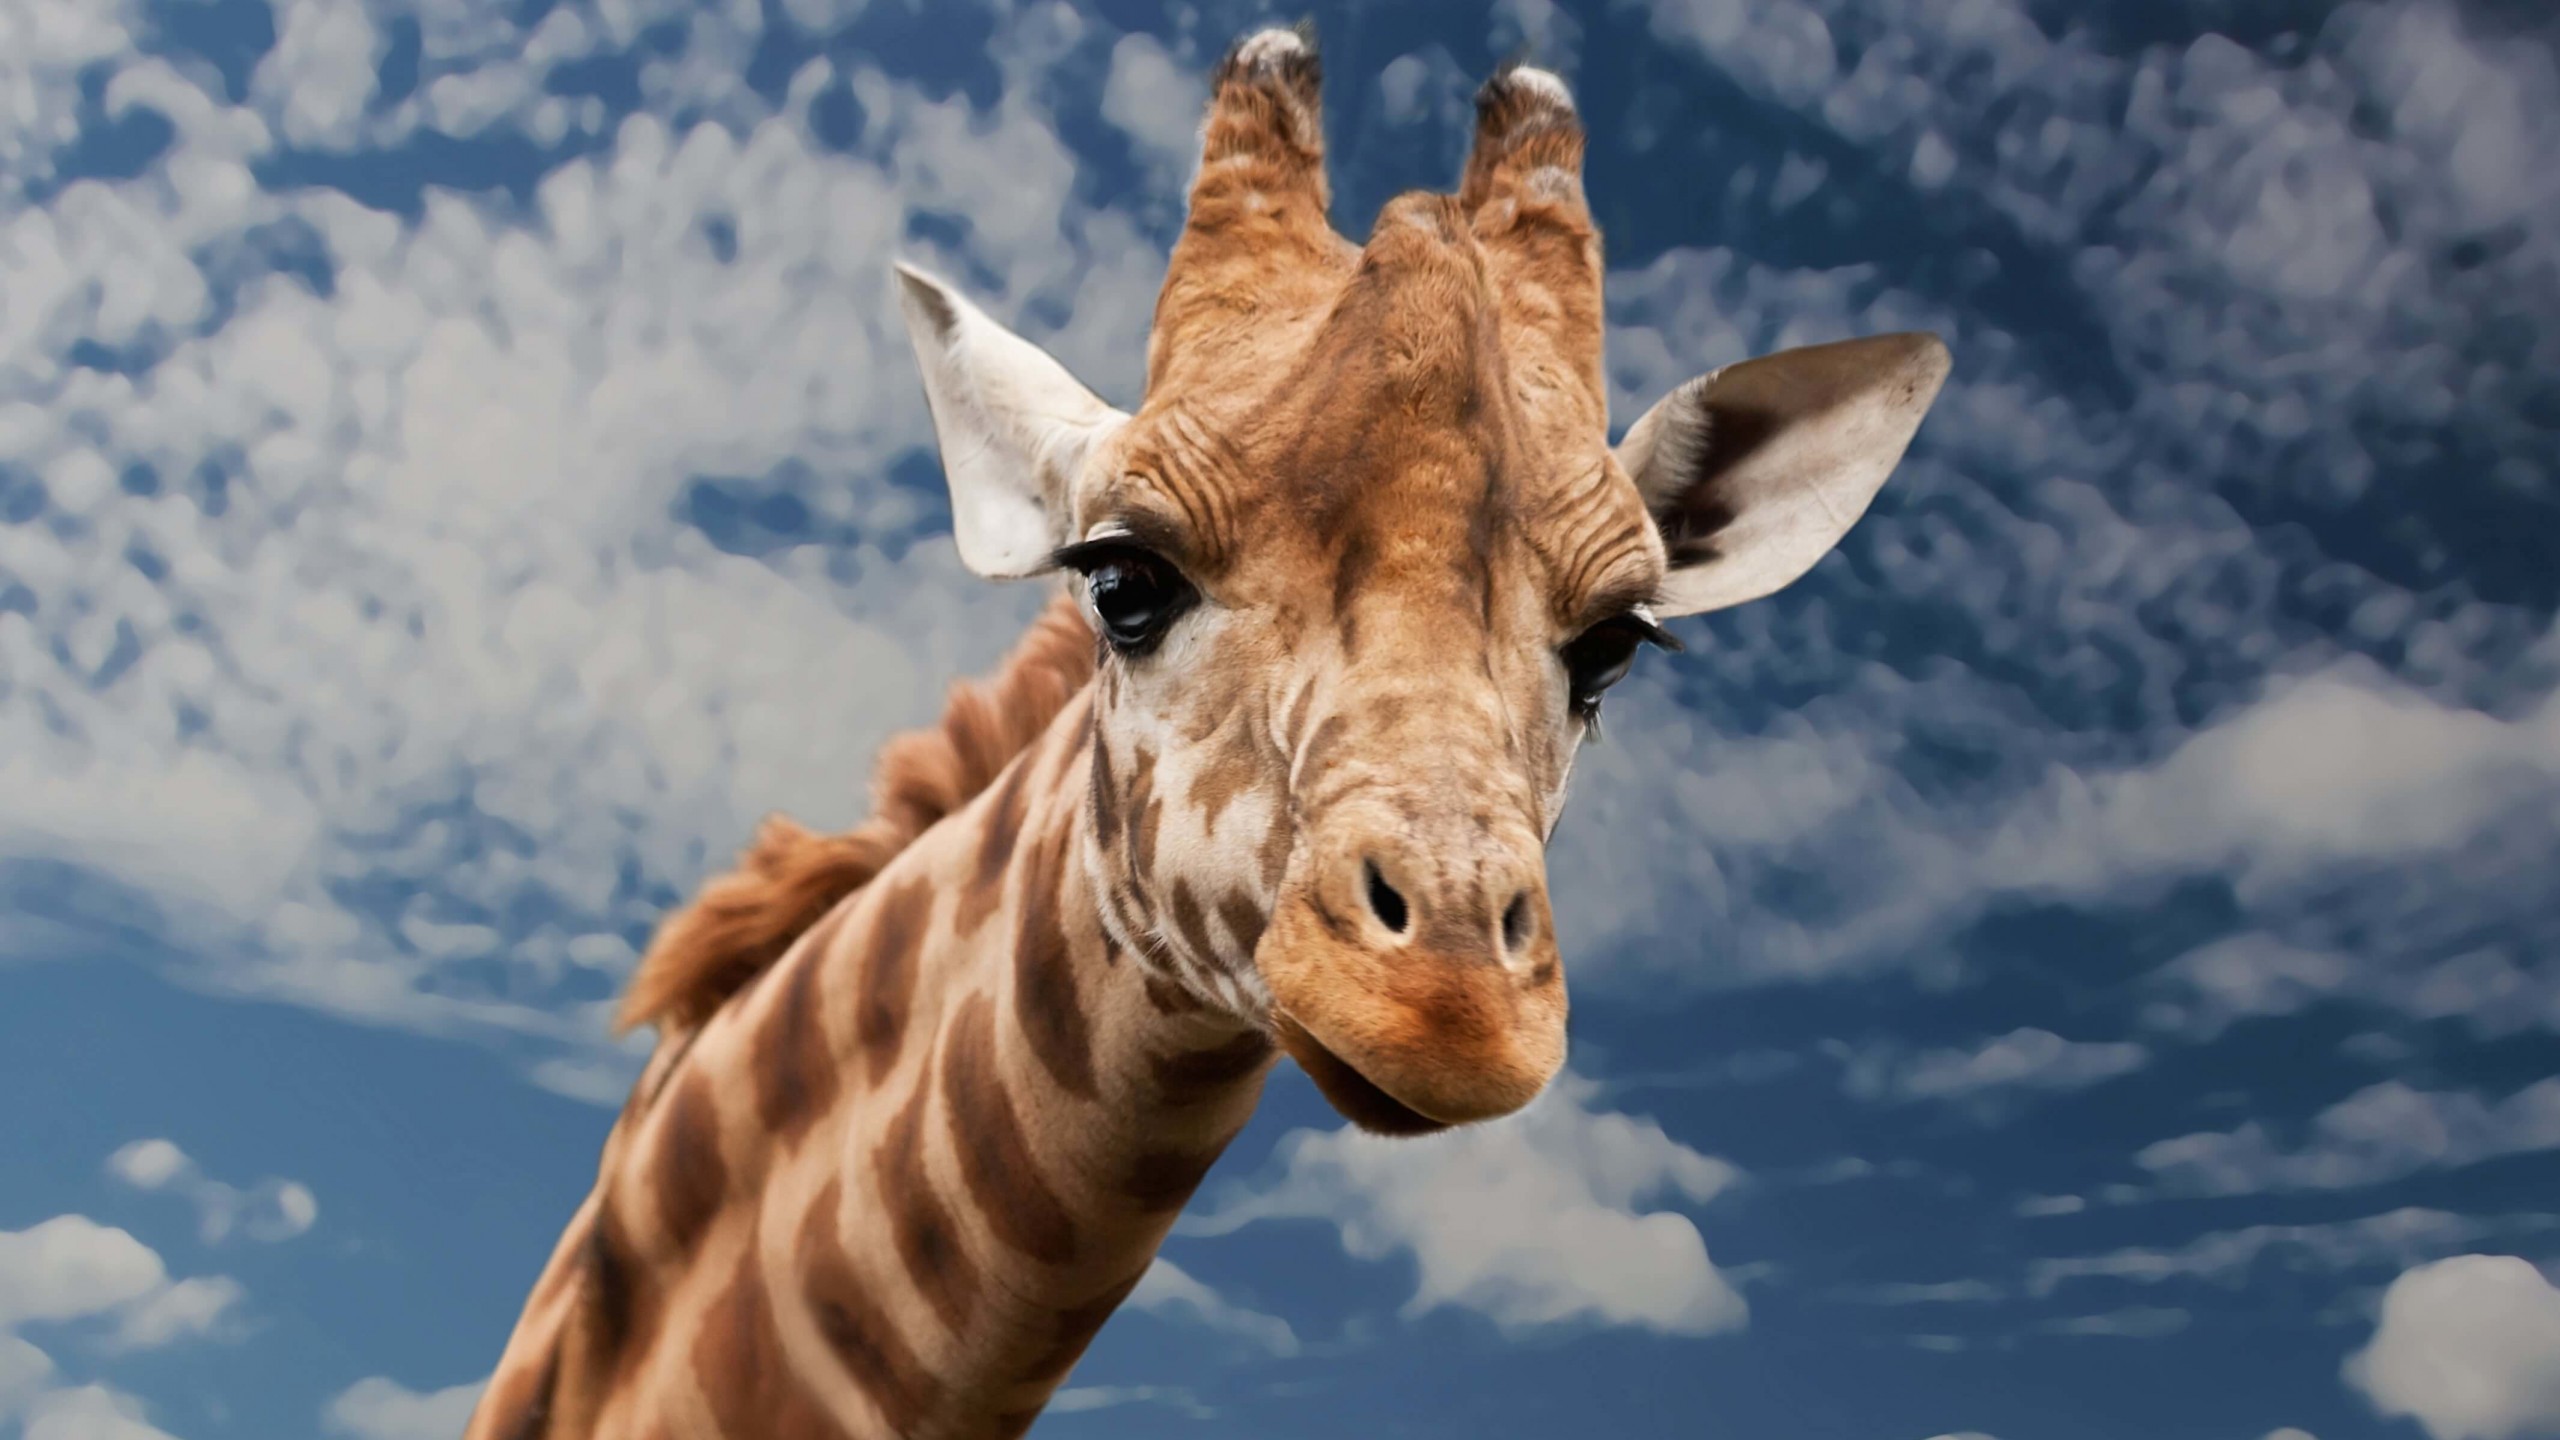 Funny Giraffe Wallpaper for Desktop 2560x1440